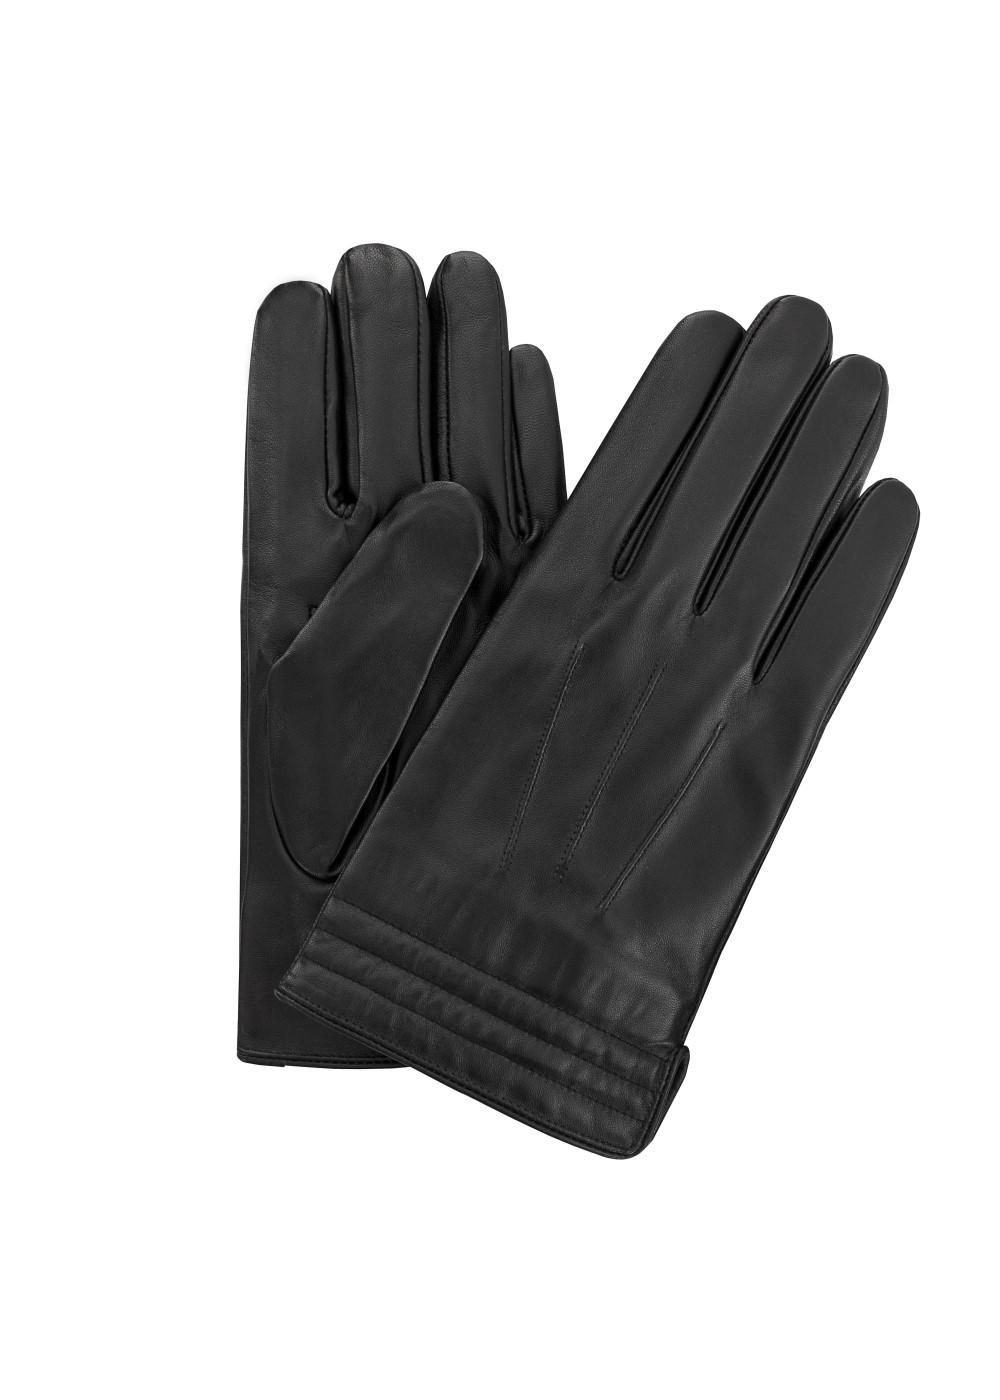 Czarne skórzane rękawiczki męskie REKMS-0014-99(Z23)